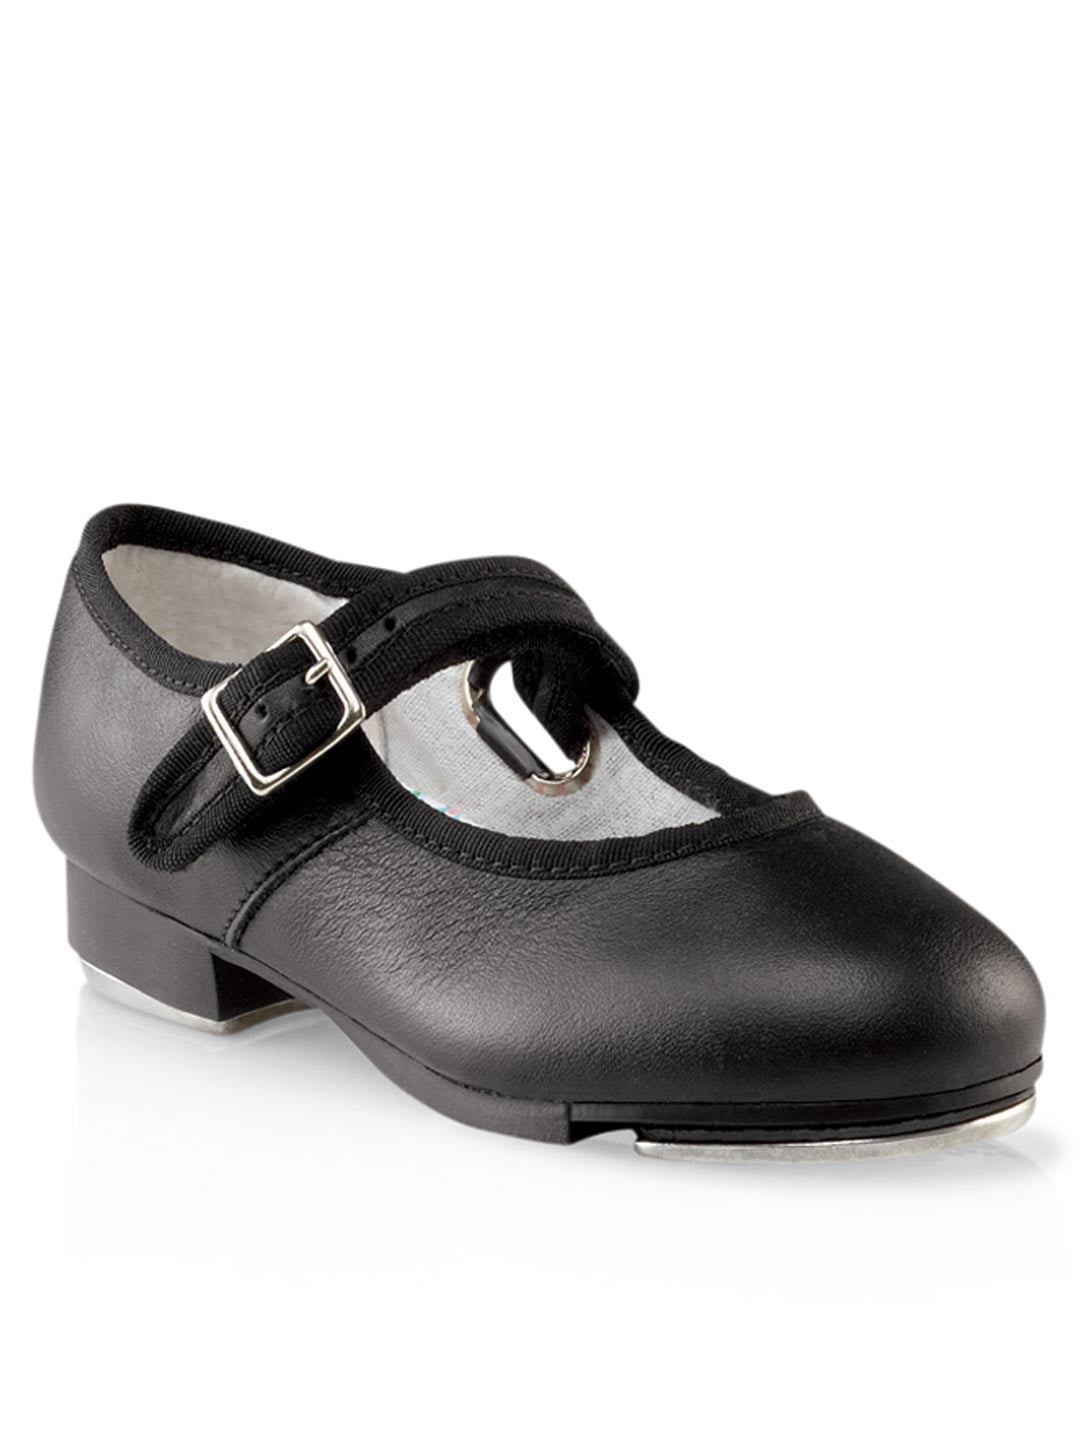 Danskin Now Black Shoes for Girls Sizes 2T-5T